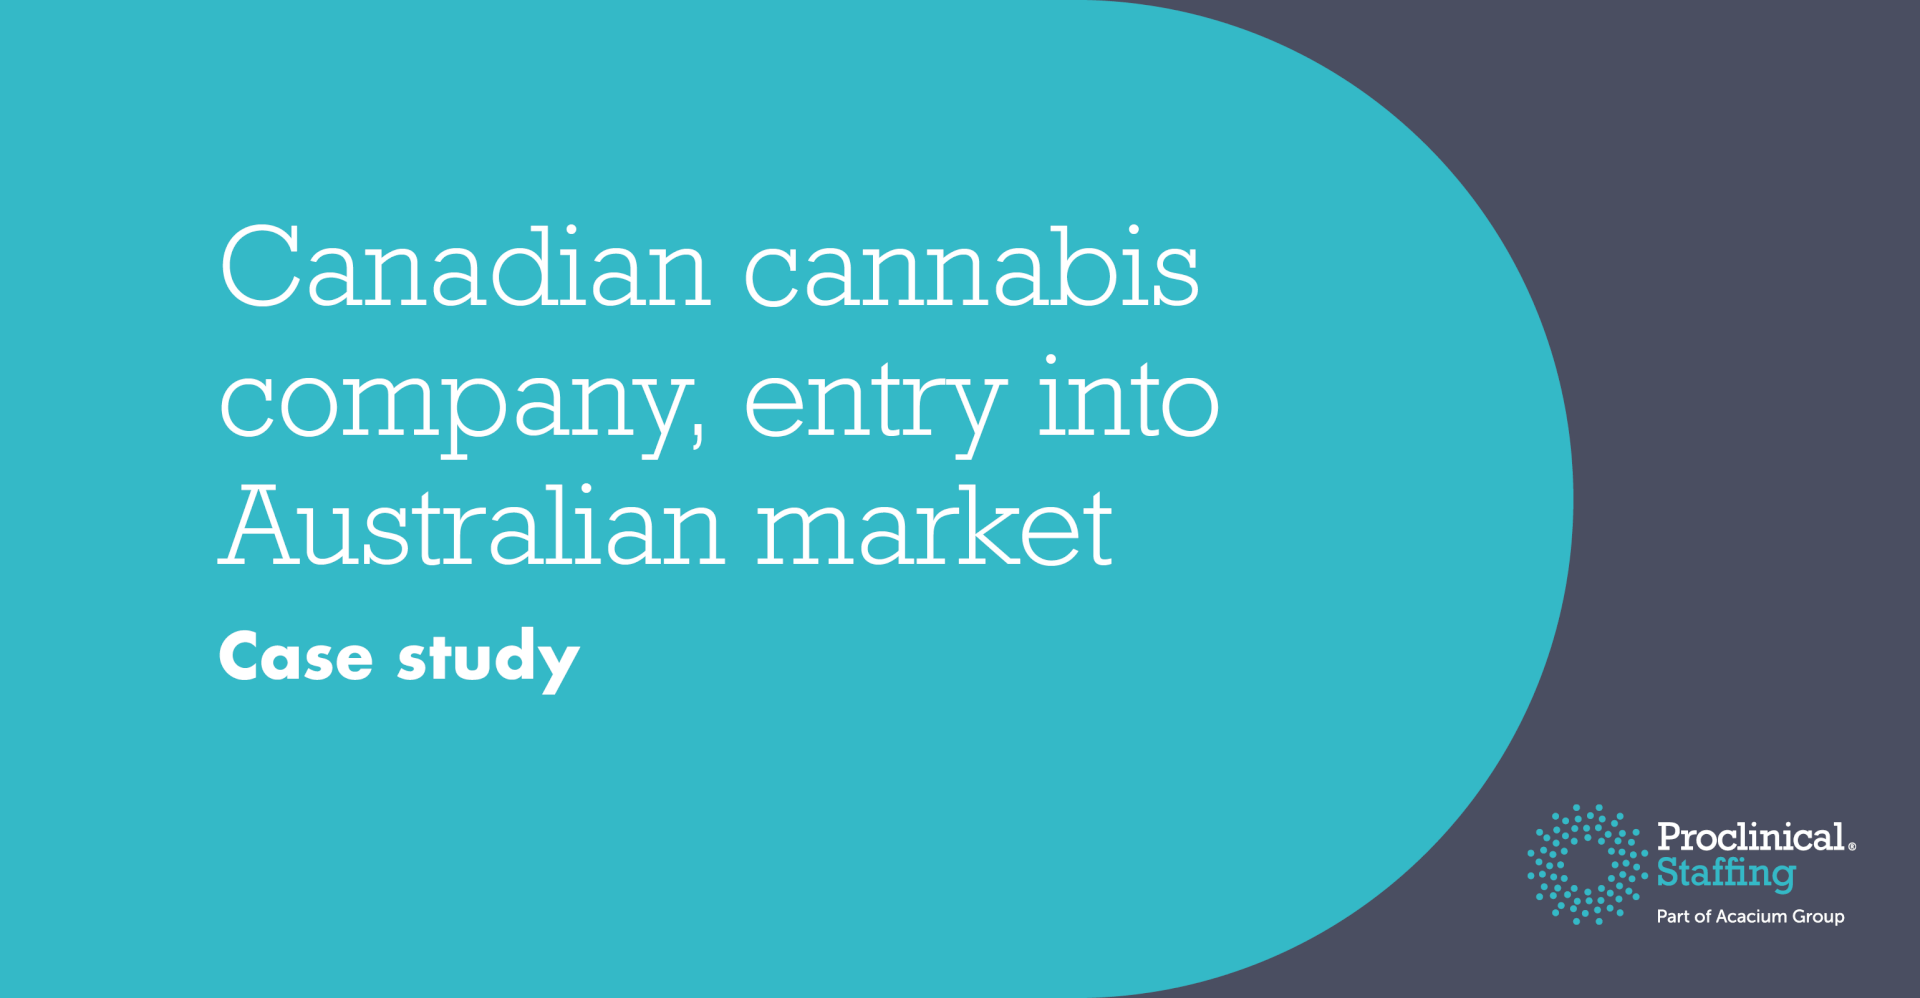 Canadian cannabis company, entry into Australian market